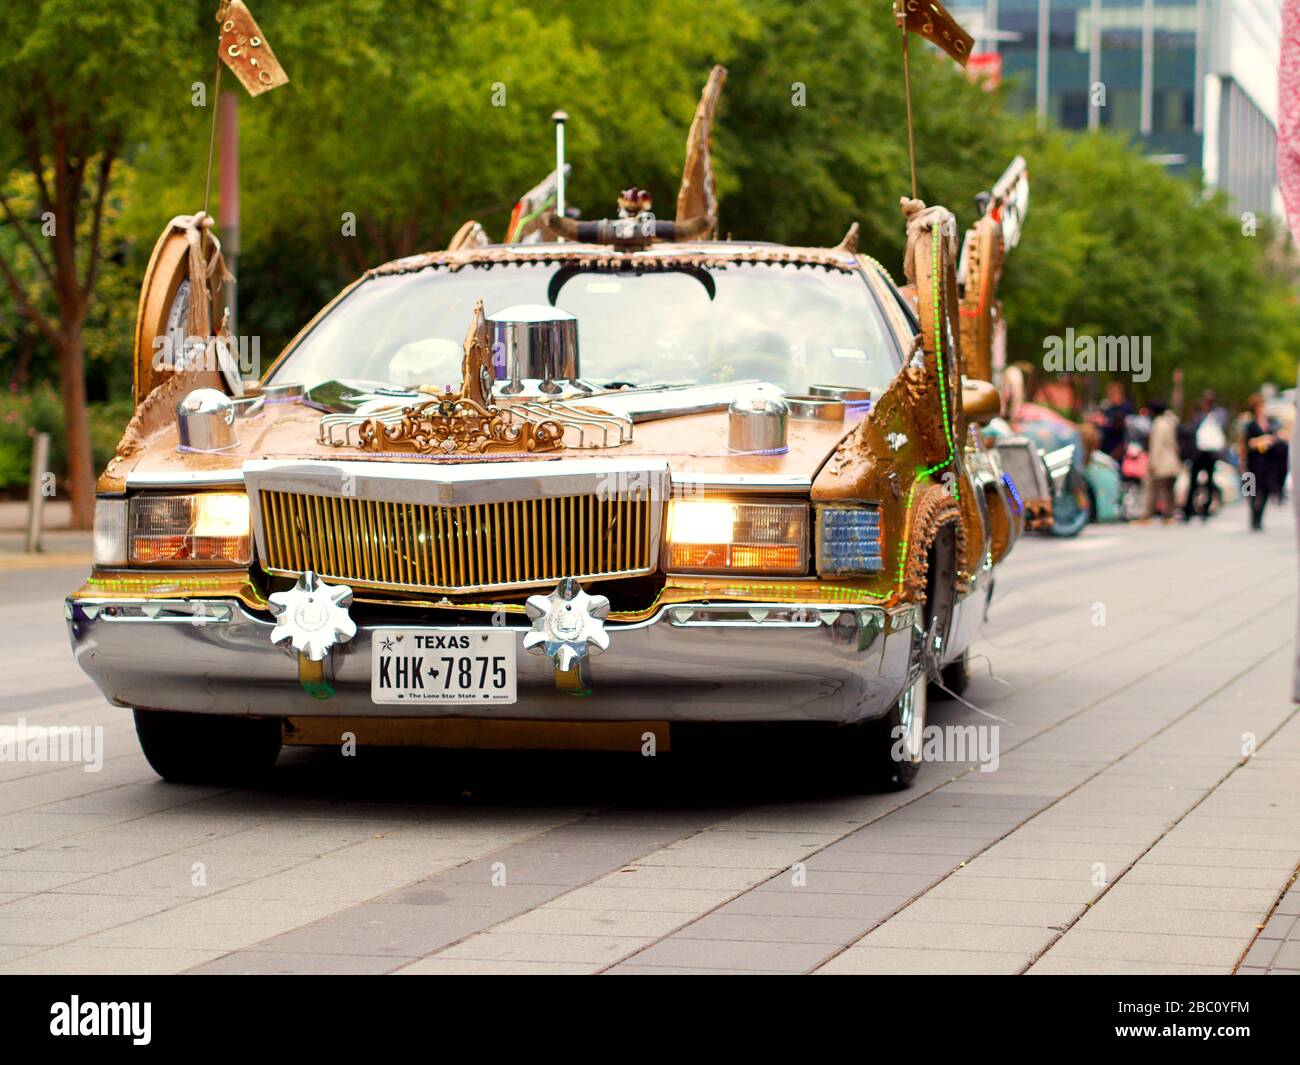 Houston Downtown, Texas, États-Unis, 17.10.2019 ; défilé annuel de voitures d'art de Houston. La parade des voitures d'art fait la promotion de voitures d'art contemporaines de toutes formes et couleurs. Banque D'Images